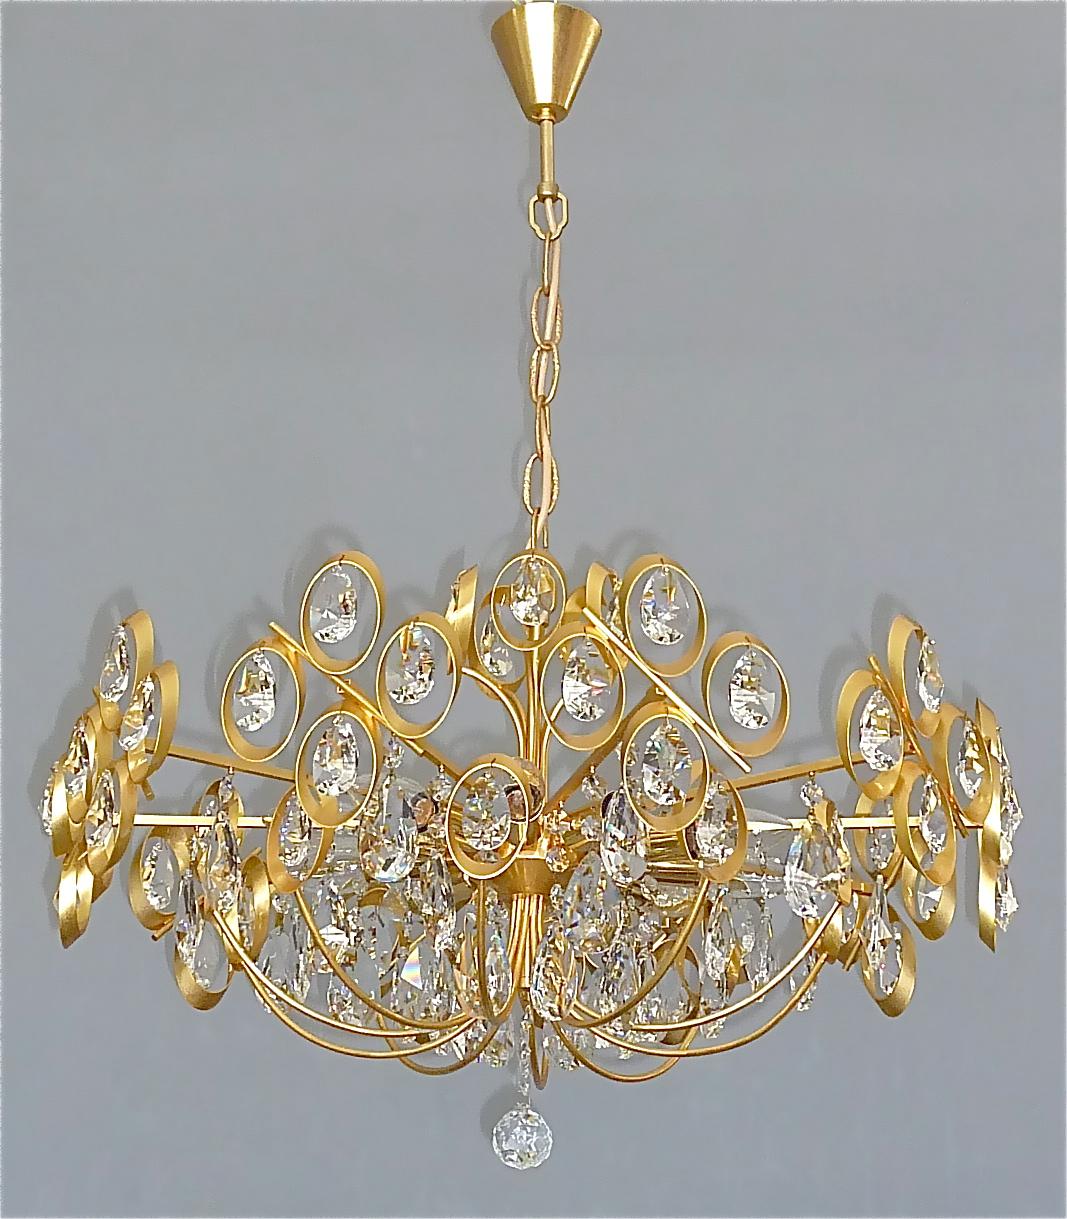 Grand lustre sputnik rare en laiton doré et verre de cristal fabriqué par Palwa, Allemagne, vers 1960-1970. Le lustre, dont la longueur est réglable par une chaîne, est constitué d'un spoutnik en laiton doré et de nombreux cristaux de verre taillés